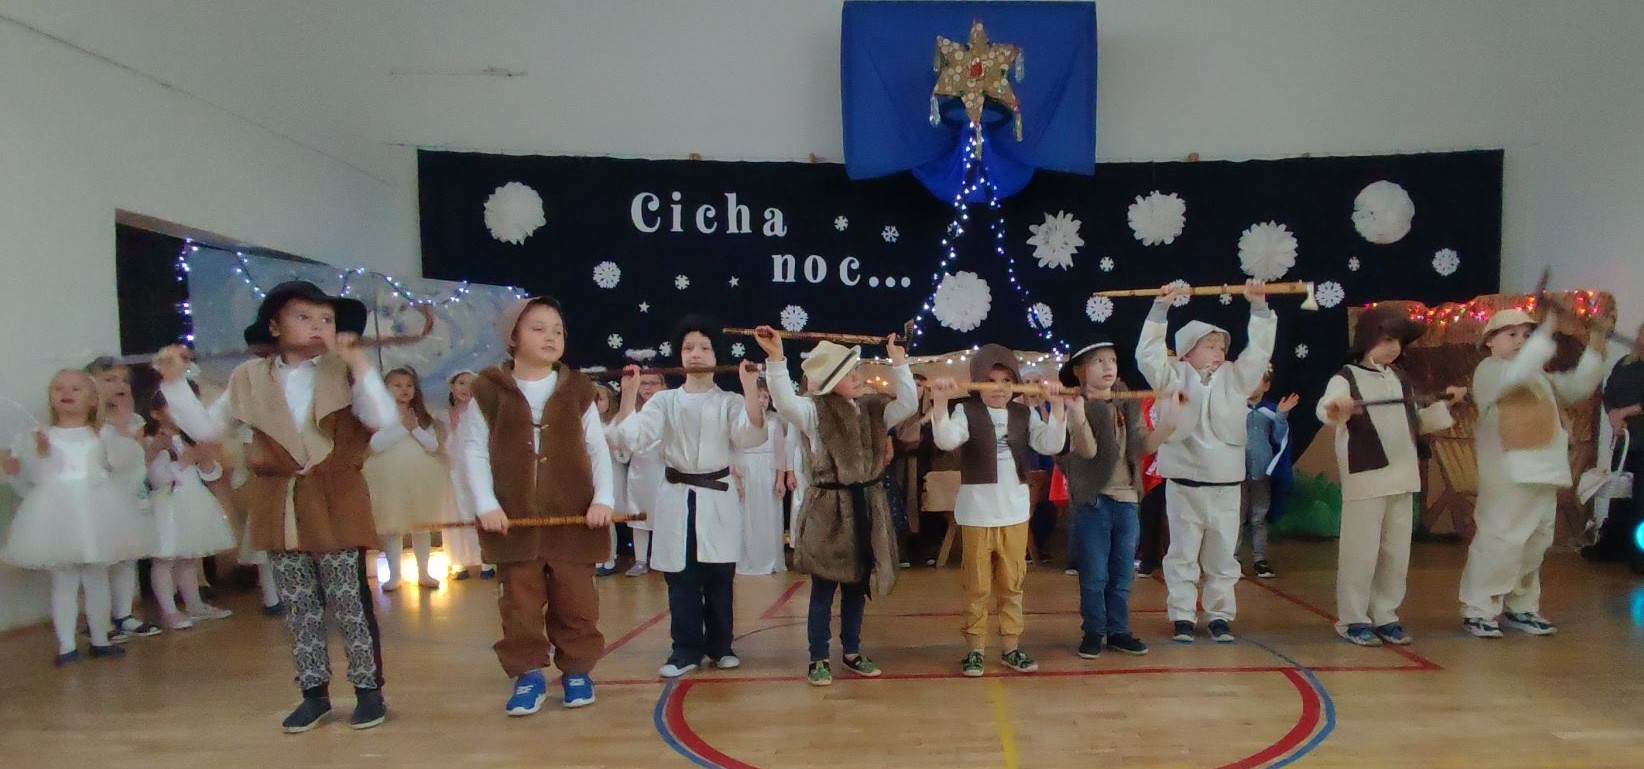 W sali gimnastycznej na tle dekoracji świątecznej z napisem „Cicha noc...”, na pierwszym planie stoją uczniowie ubrani w strój pastuszka. W rękach trzymają ciupagi.